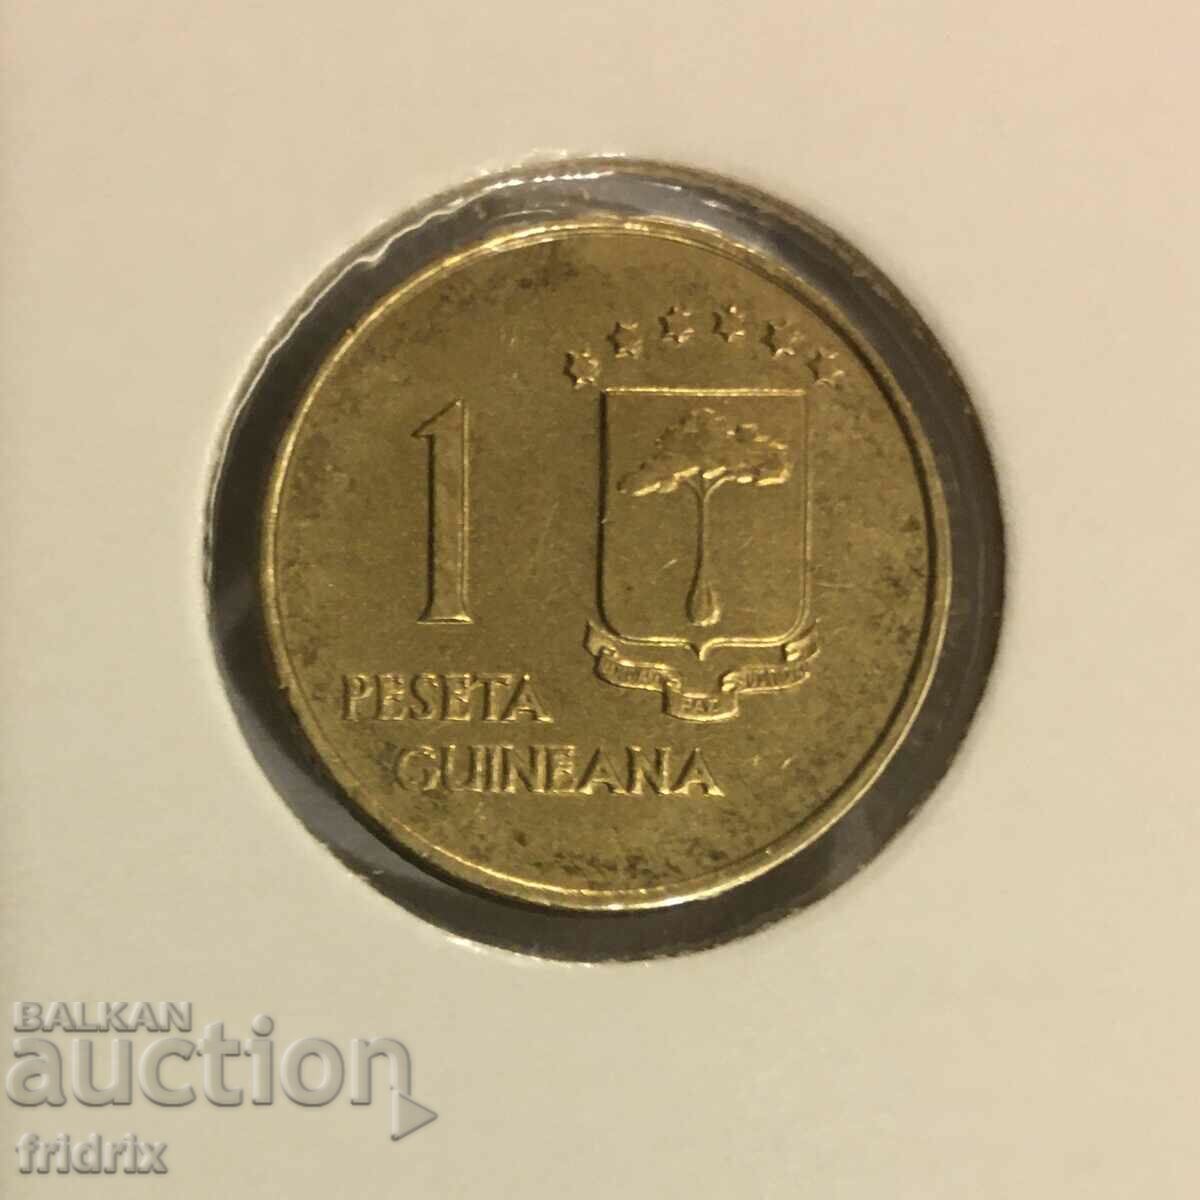 Equatorial Guinea / Equatorial Guinea 1 peseta 1969